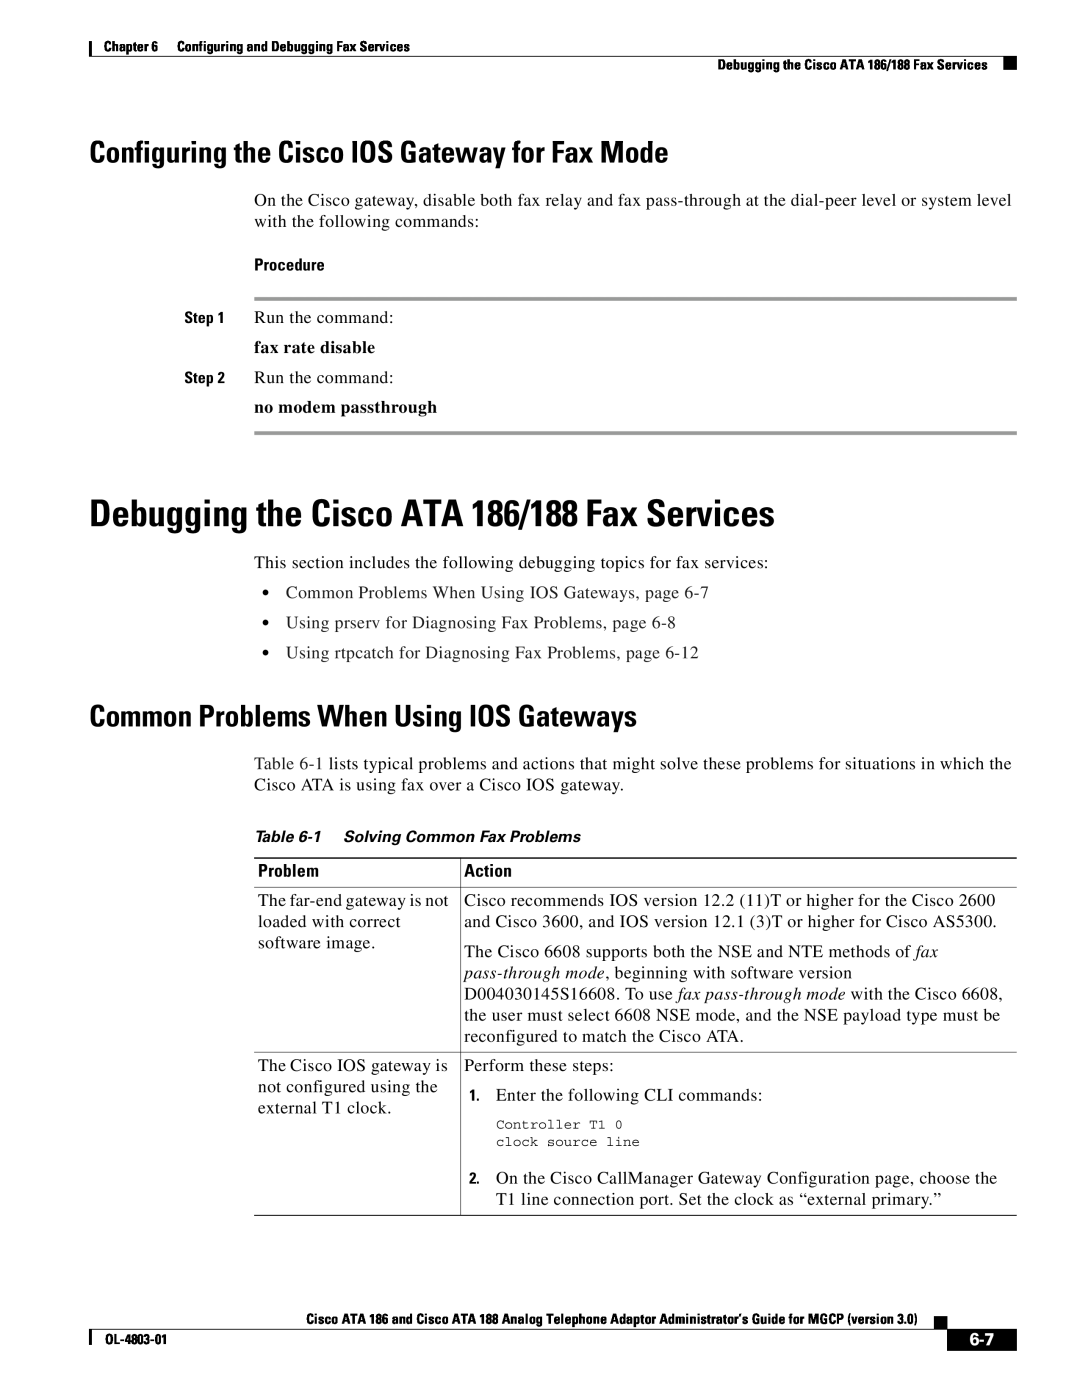 Cisco Systems ATA 188 Debugging the Cisco ATA 186/188 Fax Services, Configuring the Cisco IOS Gateway for Fax Mode, Action 